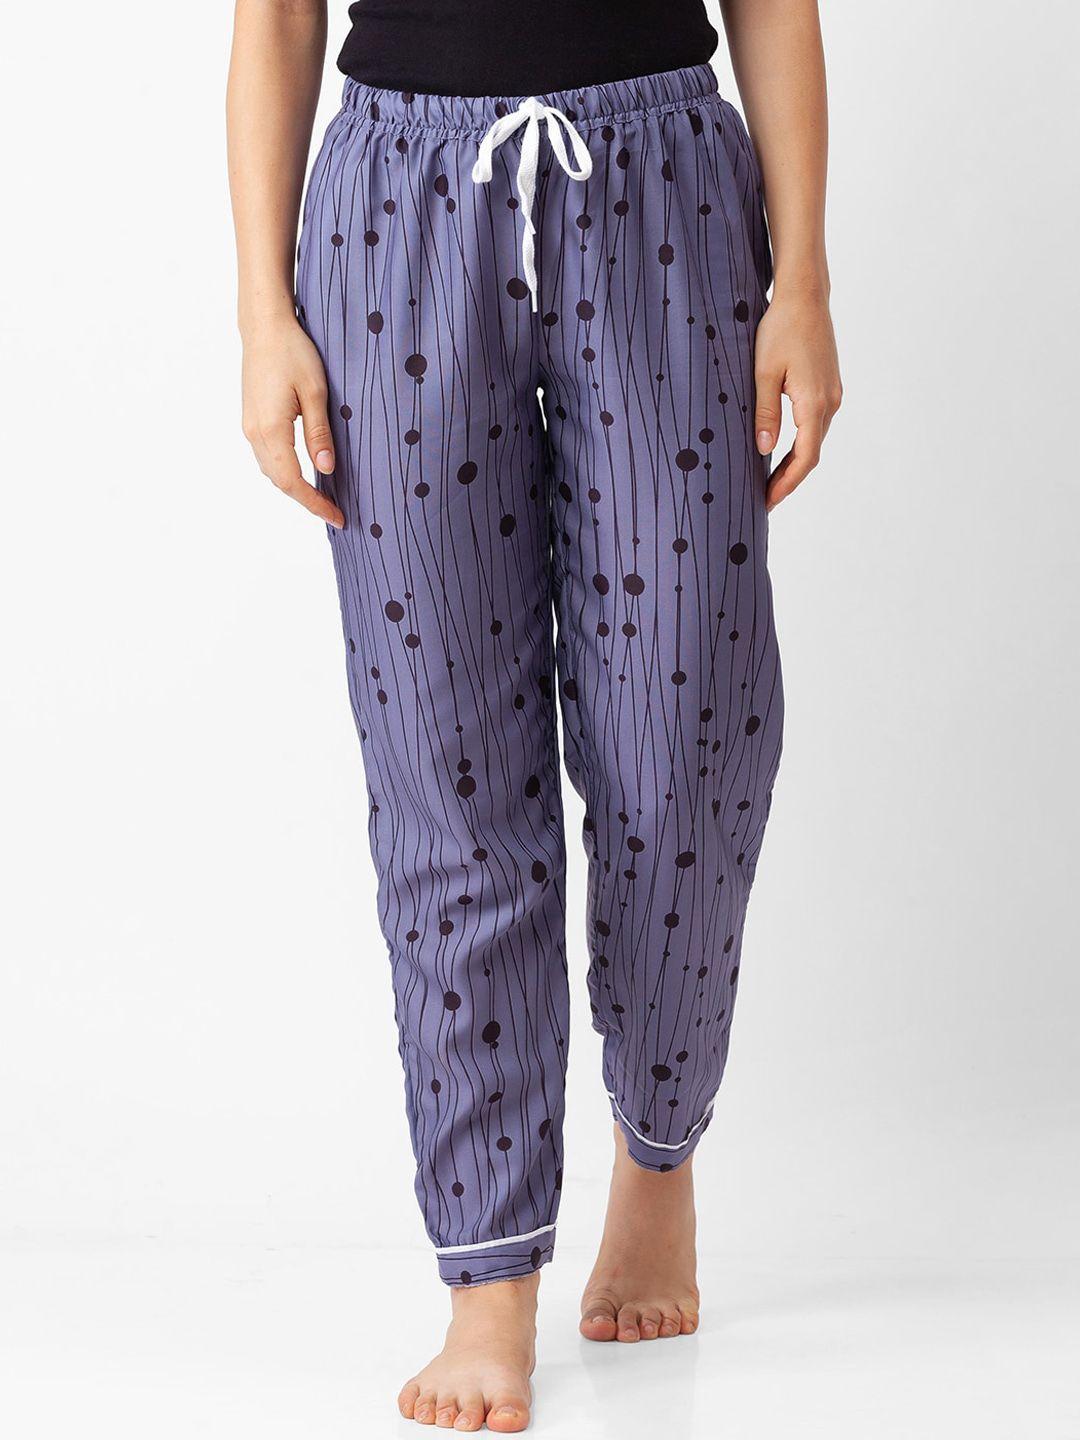 fashionrack grey polka-dots stripe cotton lounge pants